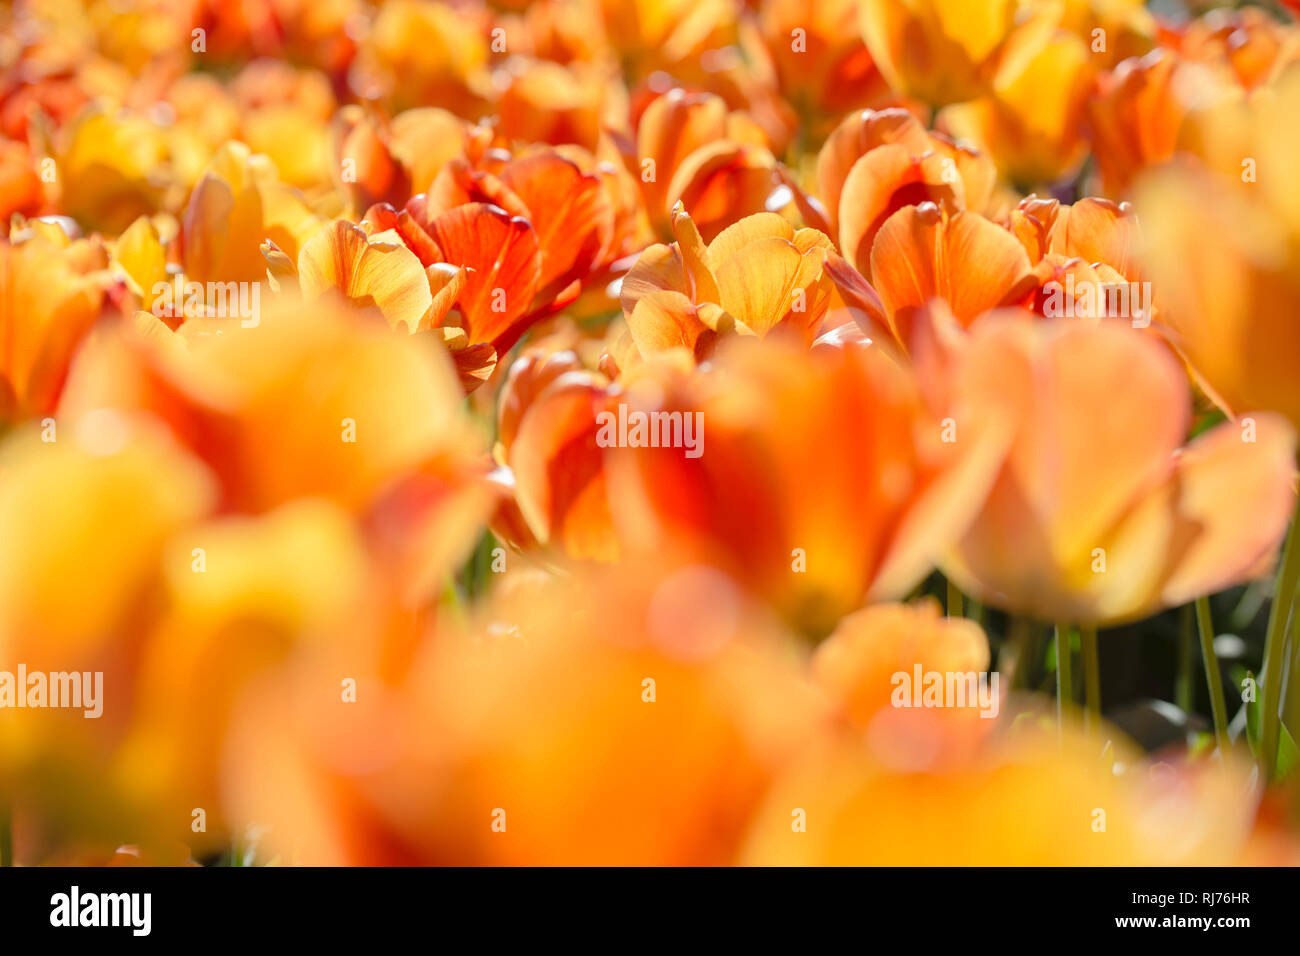 Tulpenblüten im Gegenlicht auf Augenhöhe, Stock Photo